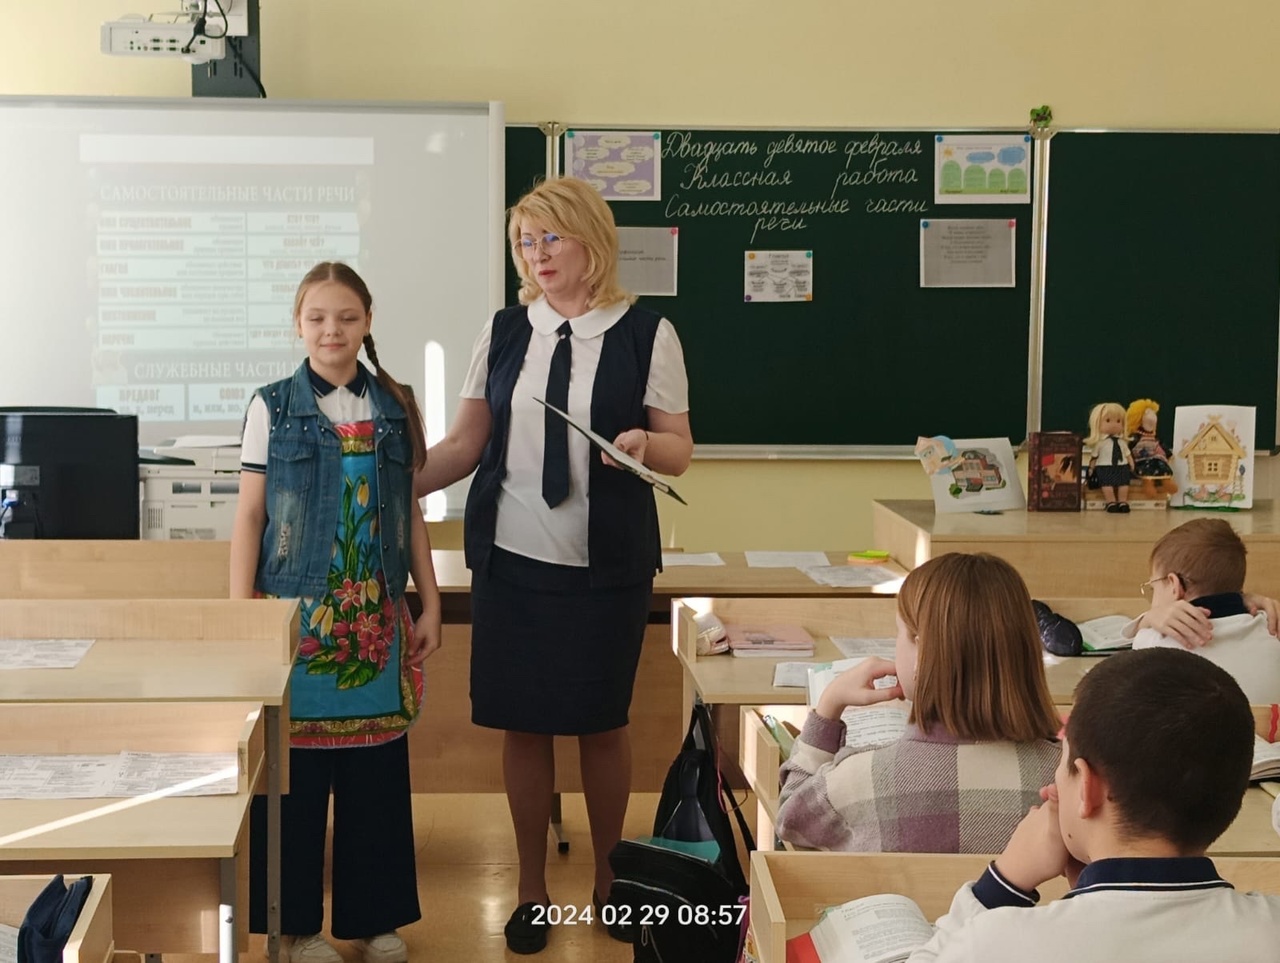 МБОУ СОШ № 23 Михайловск открытый урок по русскому языку был проведён в 5-Г классе